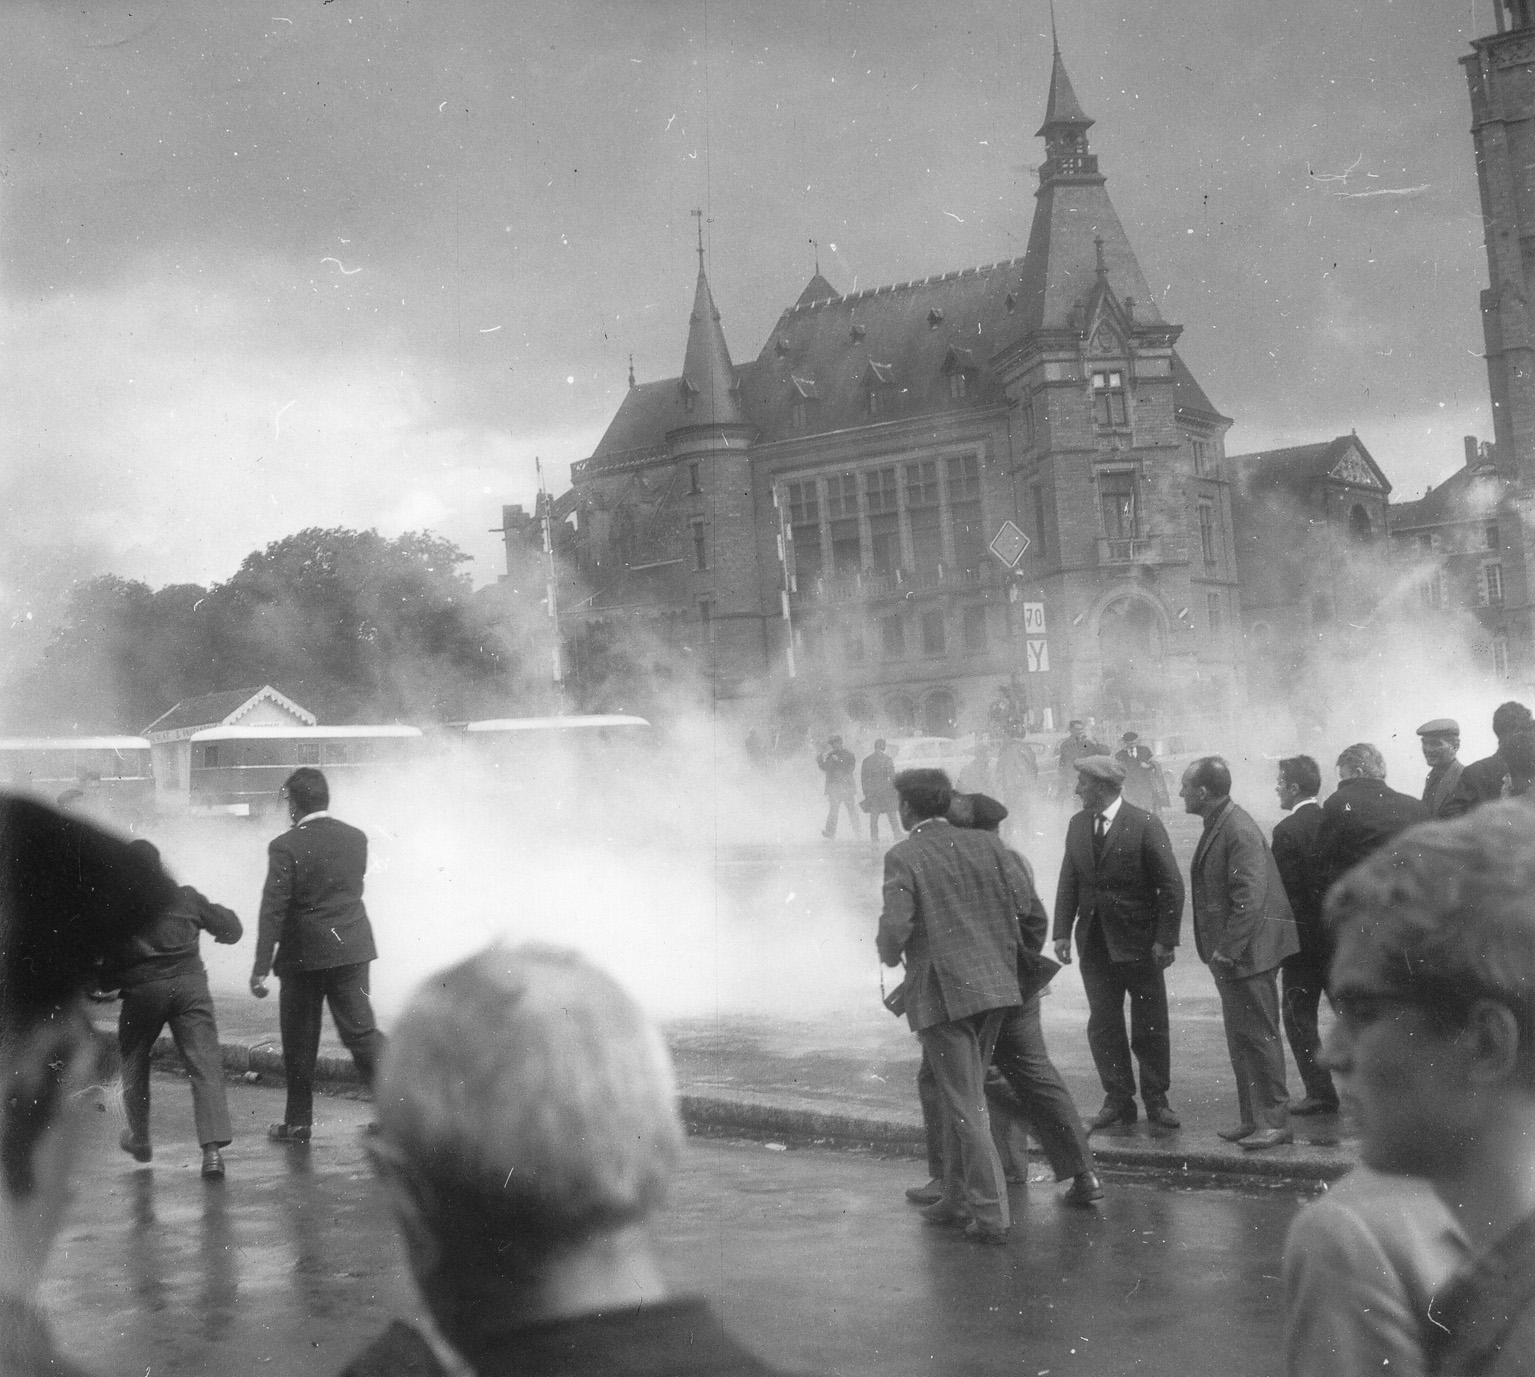 Le 26 juin 1967, entre 10 et 15 000 paysans manifestent à Redon à l’appel de la Fédération régionale des syndicats d’exploitants agricoles de l’Ouest. Le rassemblement est suivi de vifs heurts avec les forces de l’ordre, (FDSEA 353, CHT, Nantes).